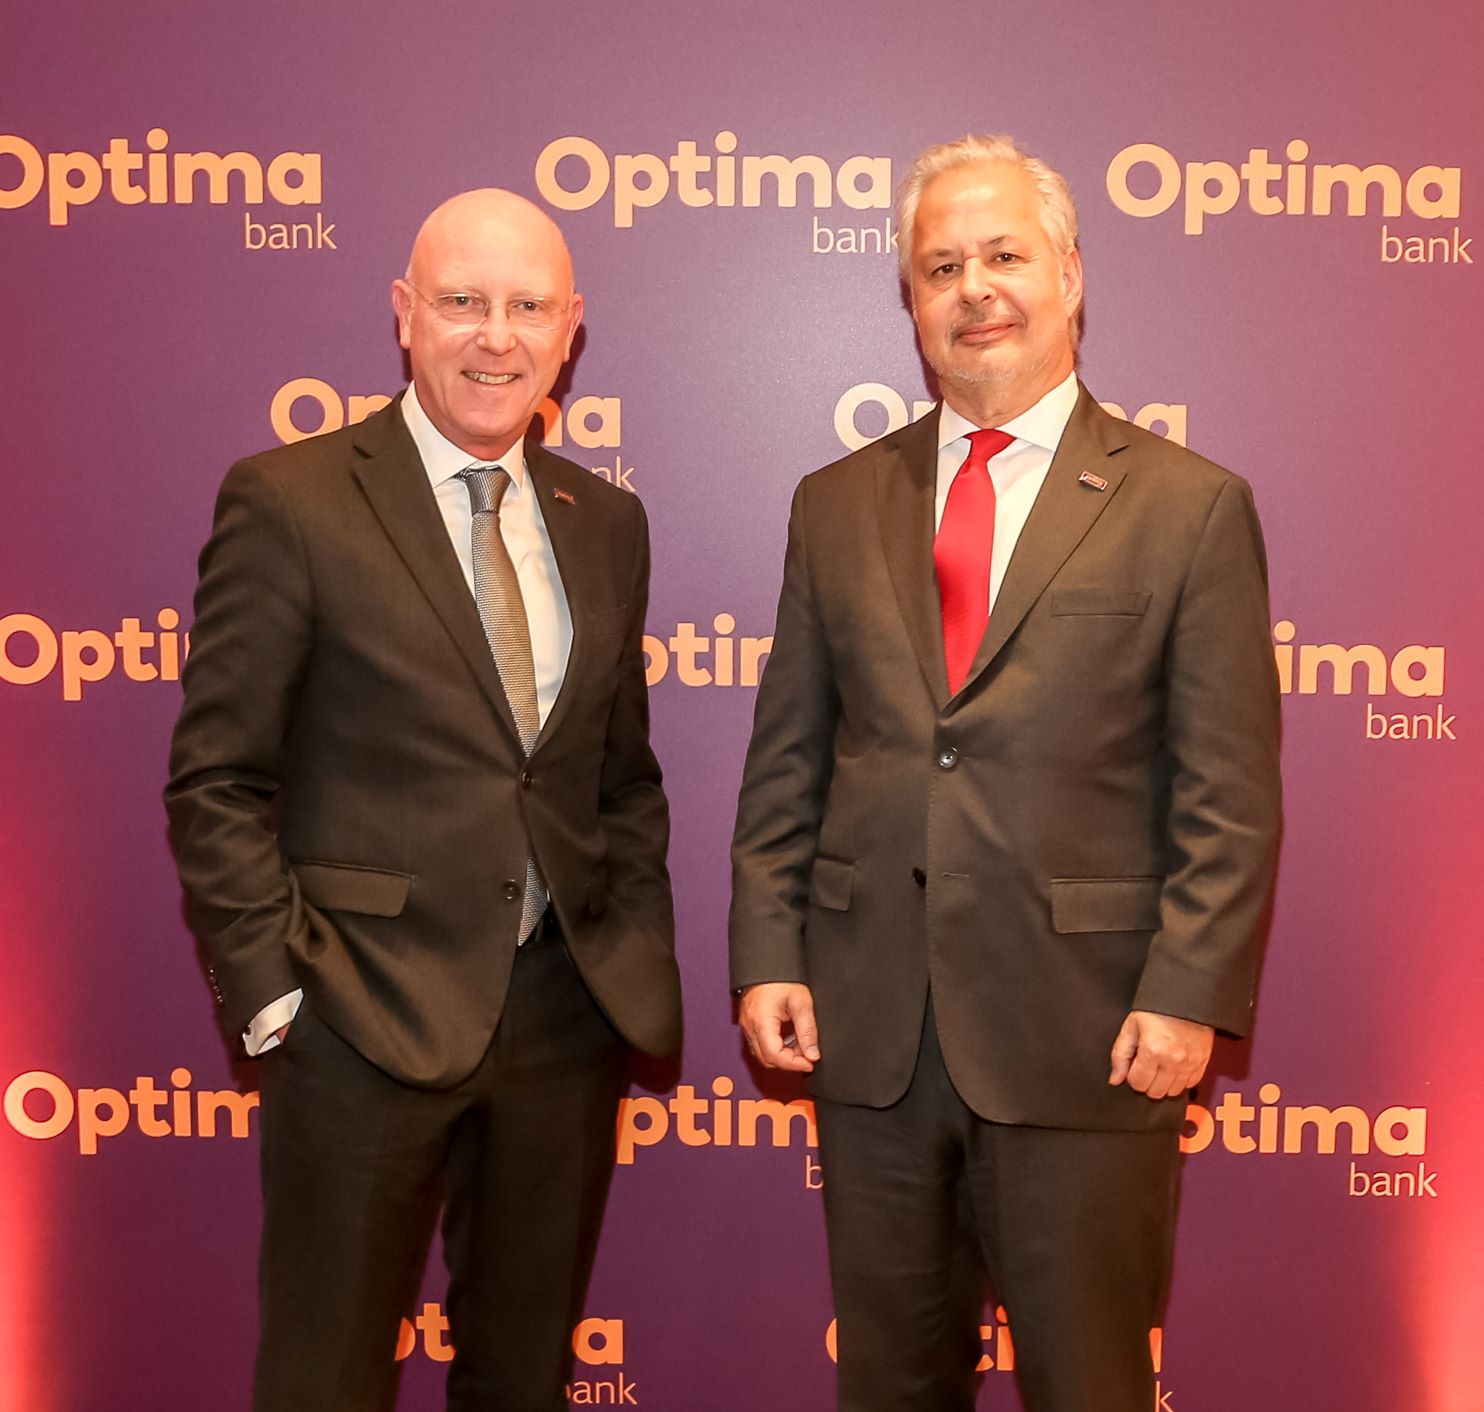 Από αριστερά ο CEO της Optima bank, κ. Δημήτρης Κυπαρίσσης και ο Πρόεδρος της Optima bank, κ. Γεώργιος Τανισκίδης